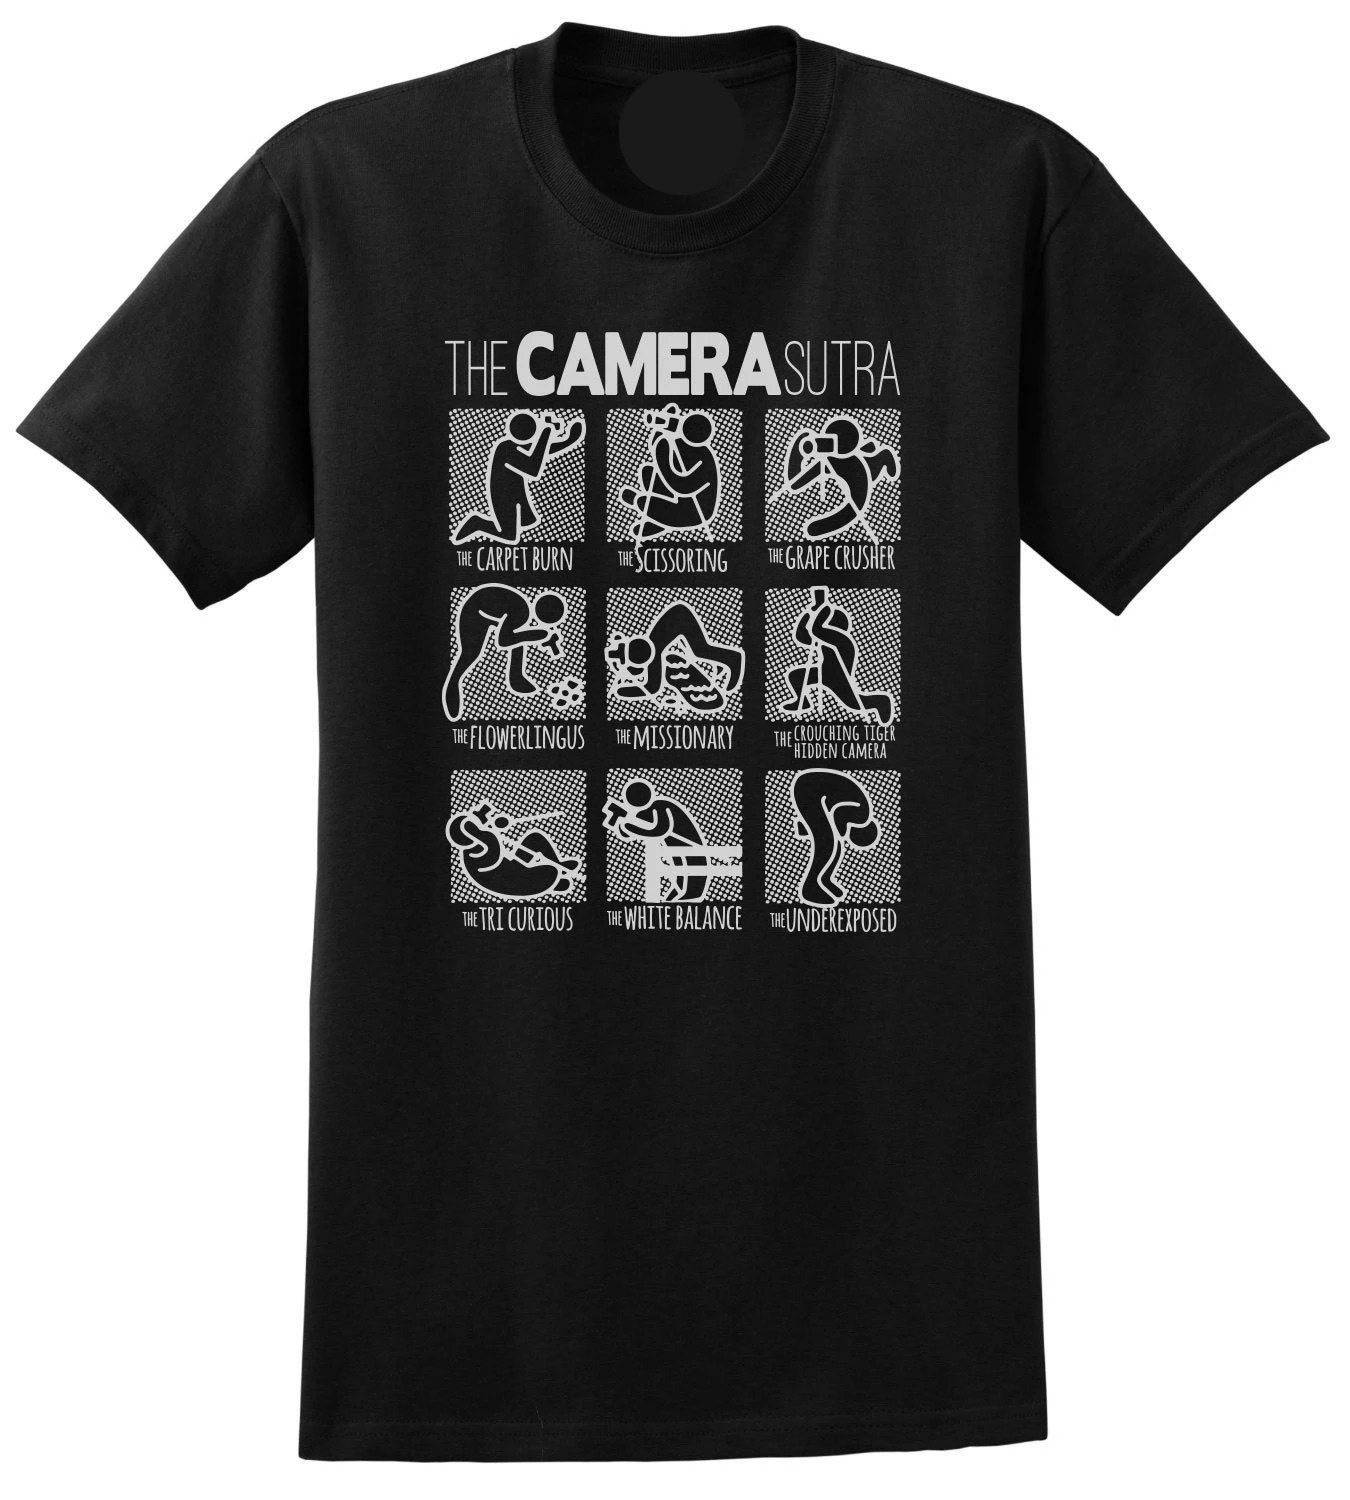 The camera sutra Camiseta 